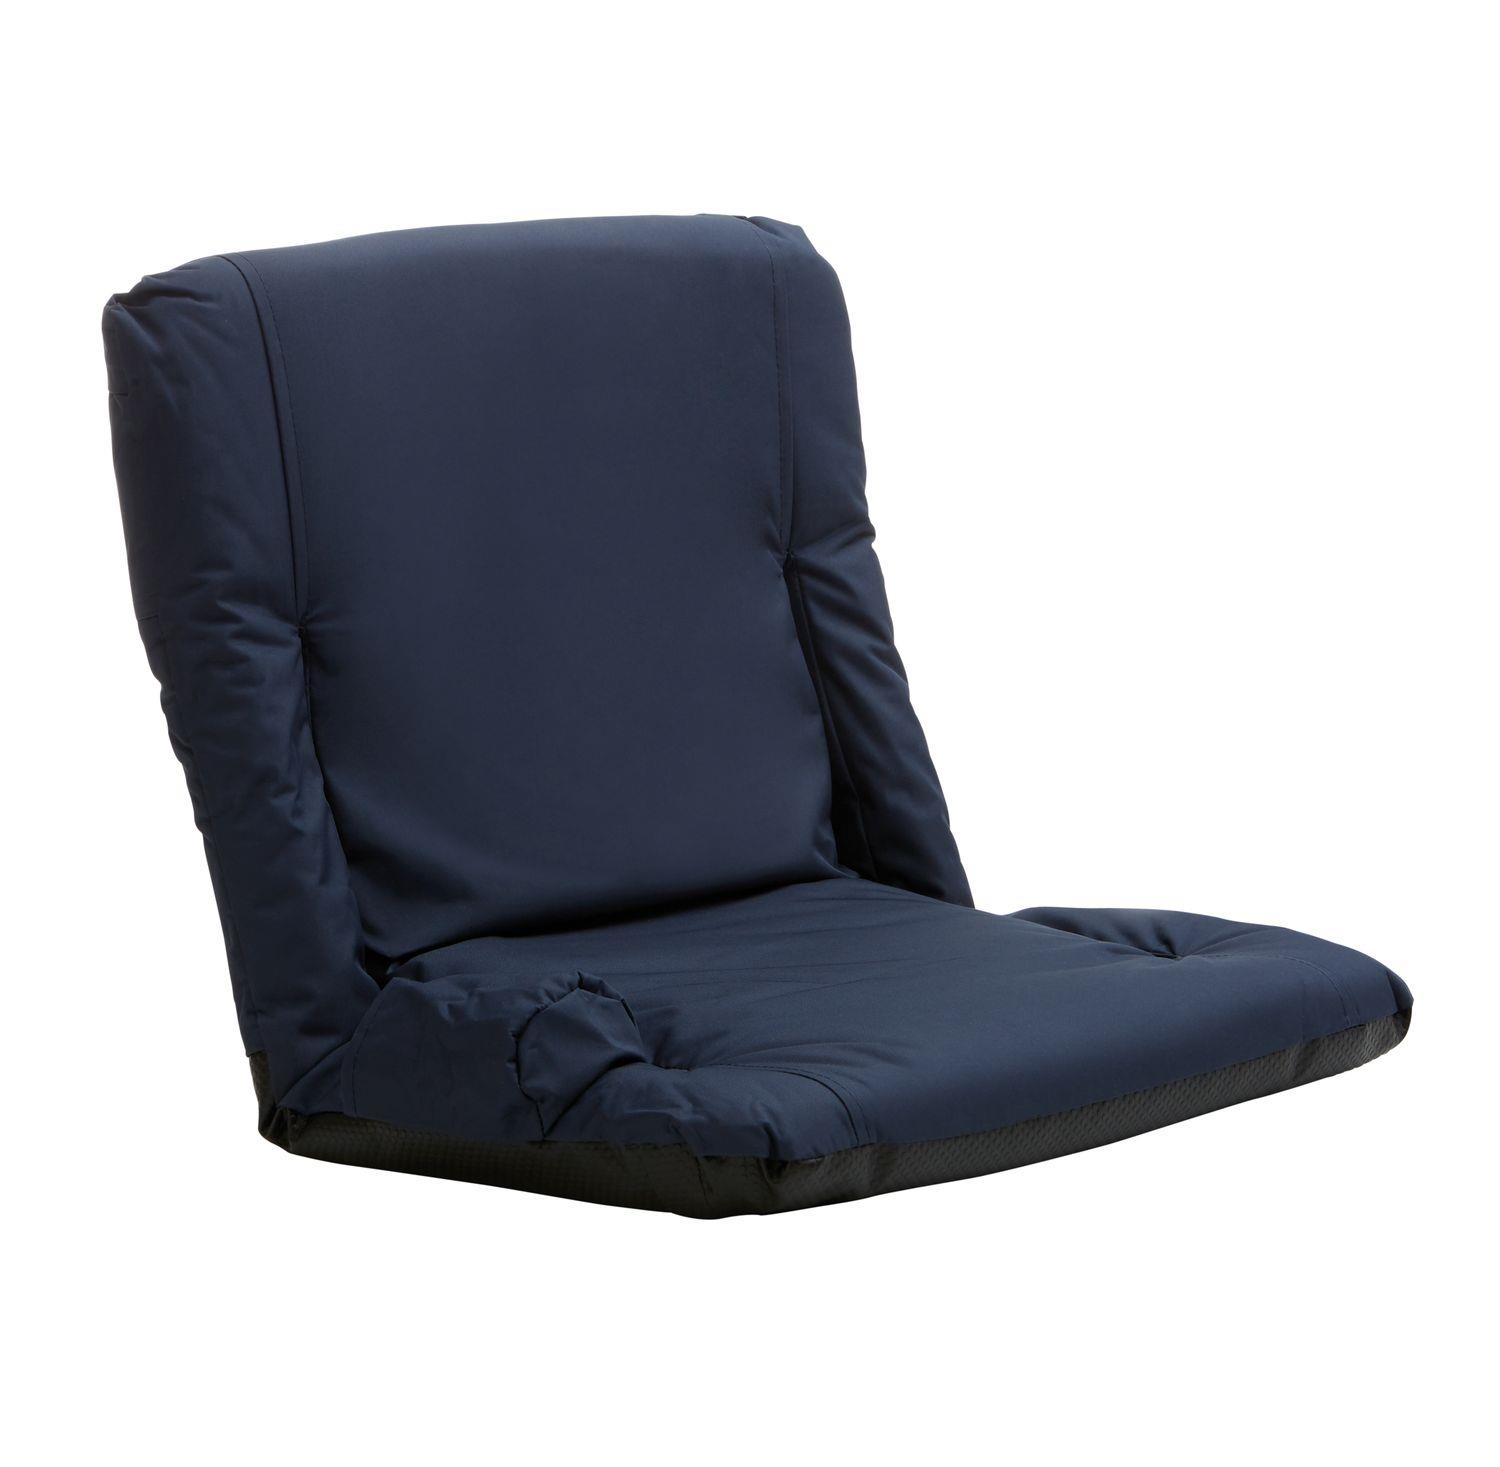 1852 Komfort-Sitzkissen mit Armlehnen und verstellbarer Rückenlehne